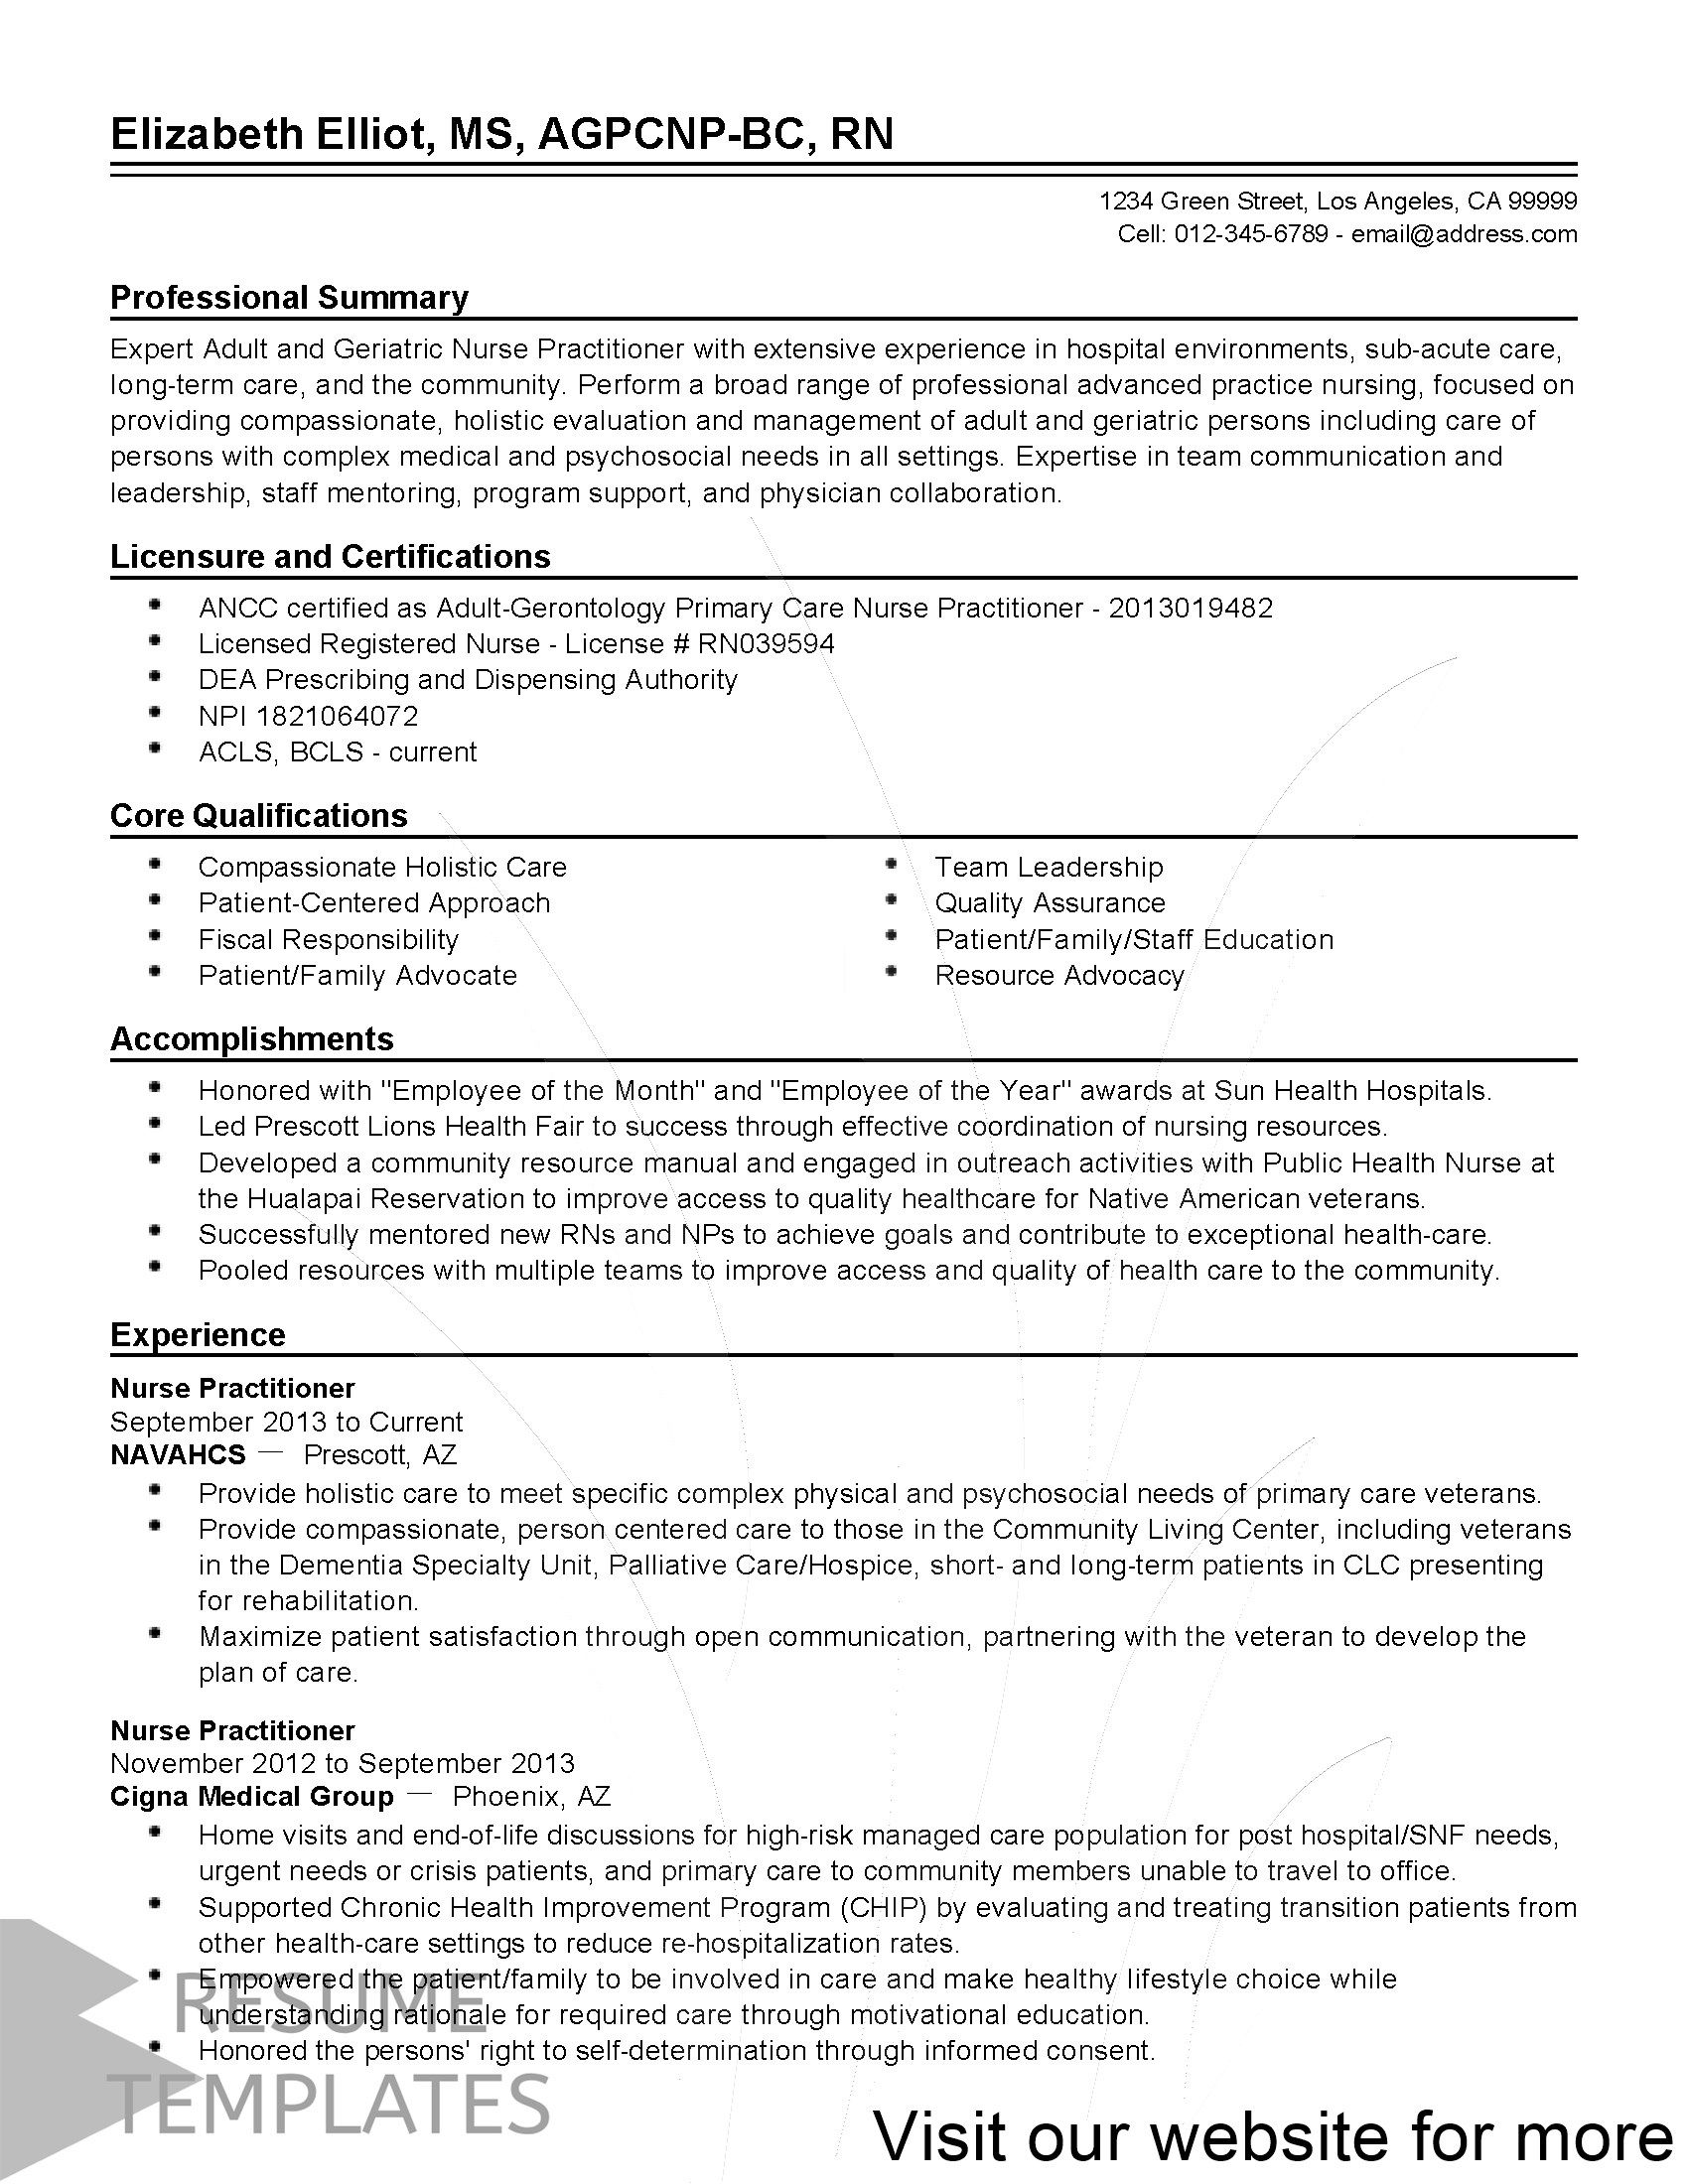 49 Experienced Nurse Resume Examples Nurse Job Description Nurse Practitioner Job Description Family Nurse Practitioner